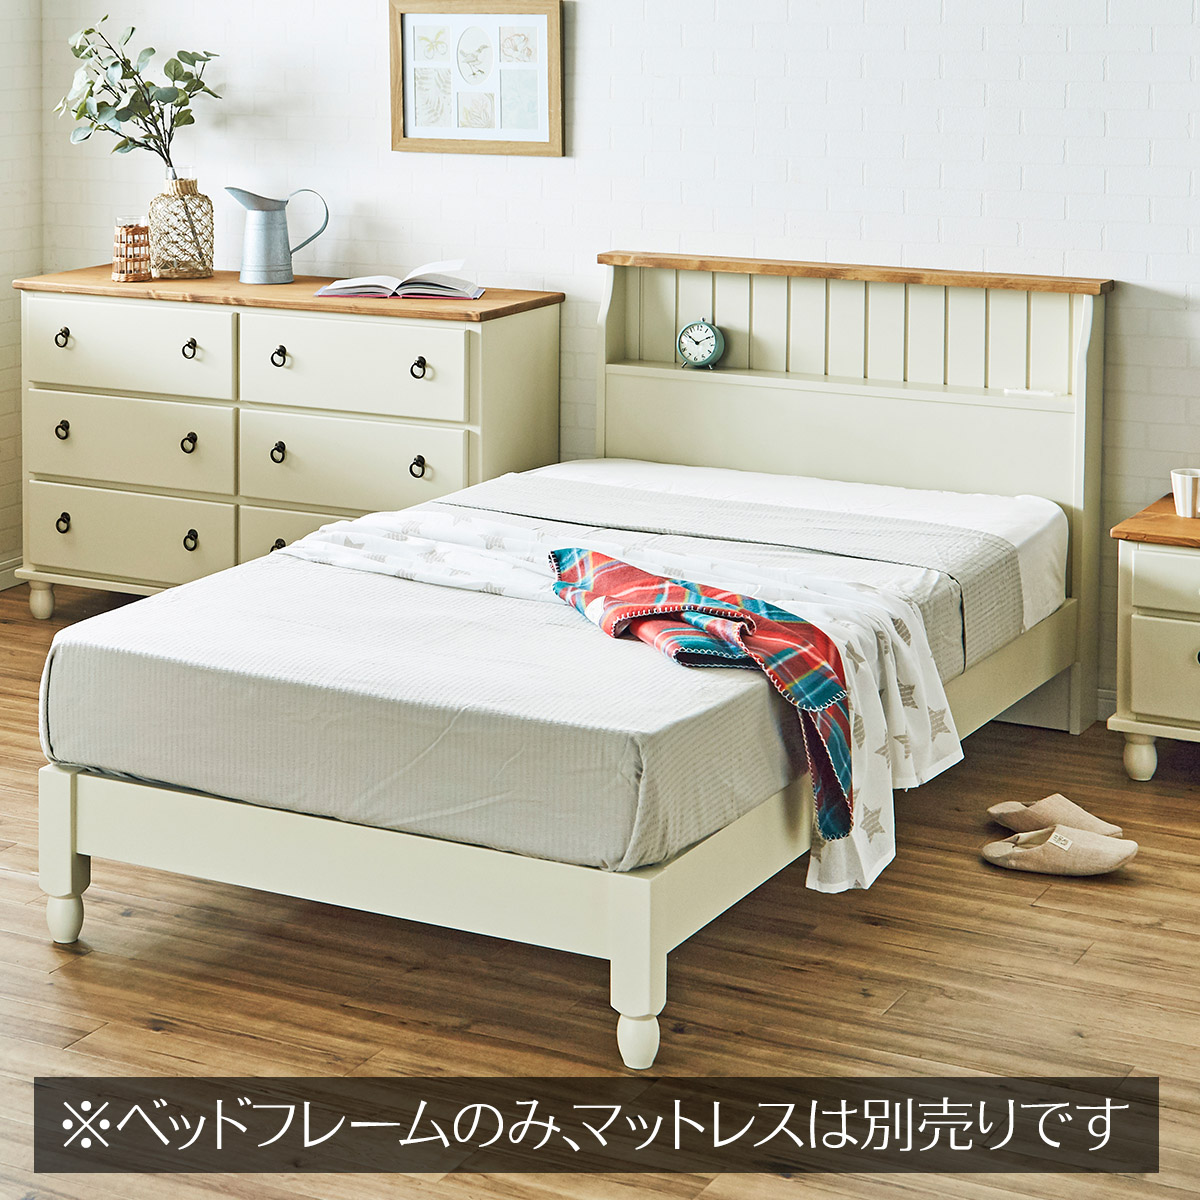 木製ベッド フレンチカントリー家具 白 シングルベッド 組み立て 